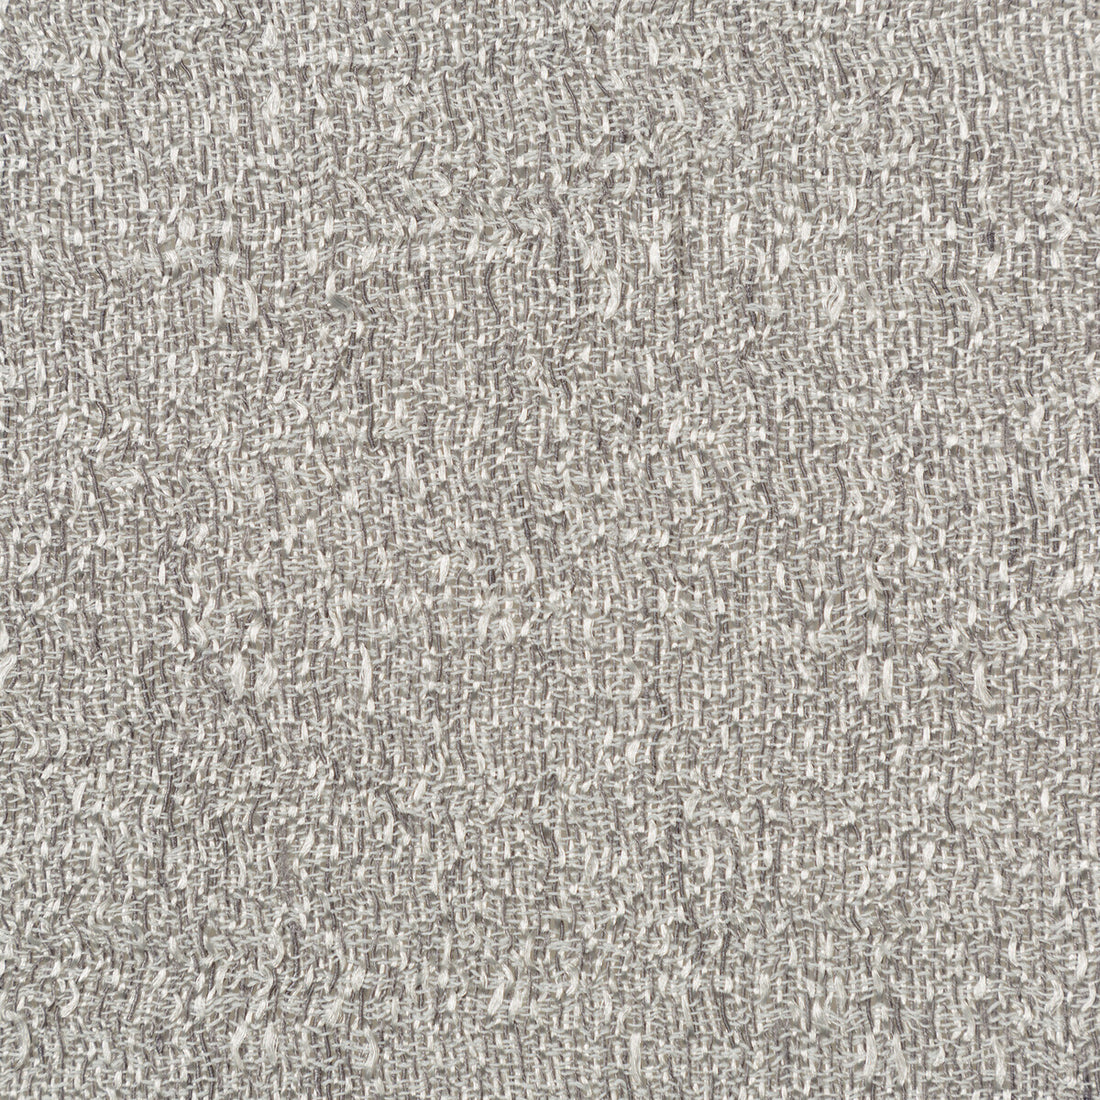 Kravet Basics fabric in 4764-21 color - pattern 4764.21.0 - by Kravet Basics